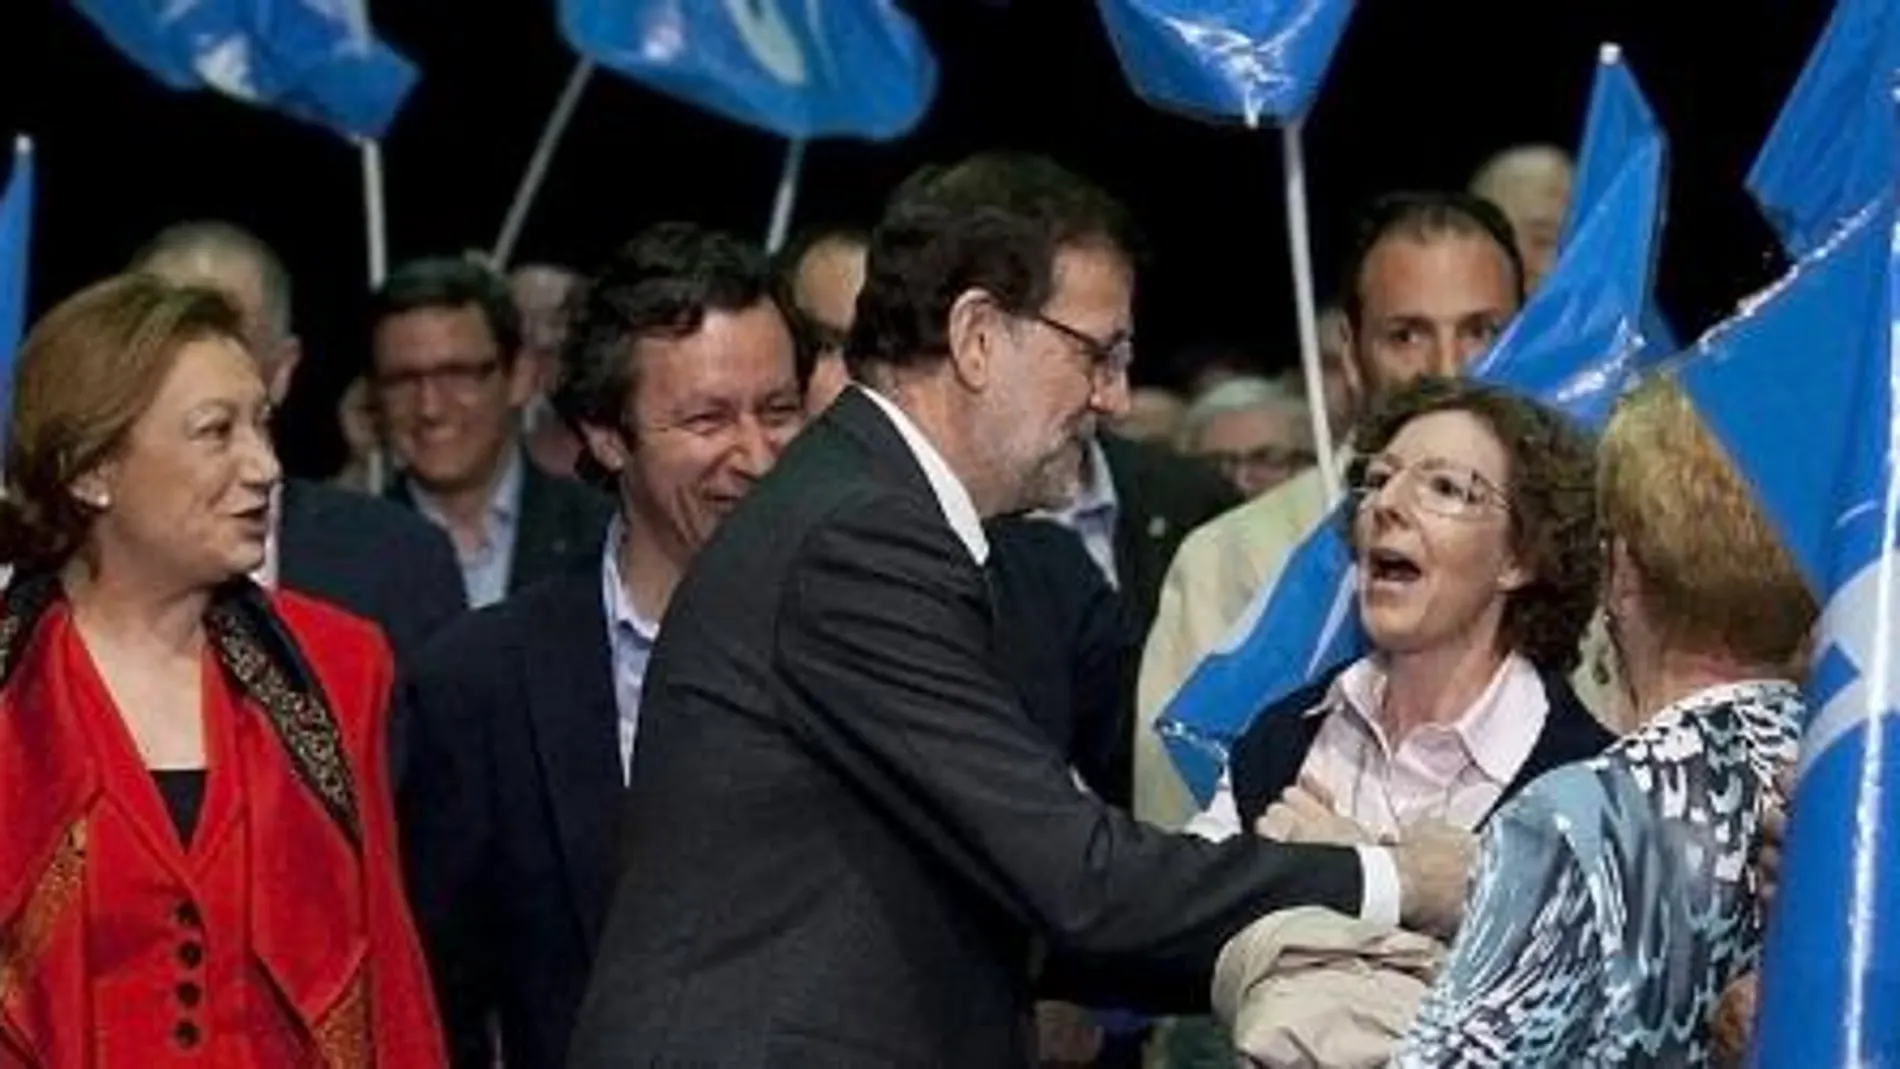 Fotgrafía facilitada por el Partido Popular del presidente del Gobierno, Marinao Rajoy, y la presenta de Aragón, Luisa Fernada Rudi, durante el mitin electoral celebrado esta tarde en Zaragoza